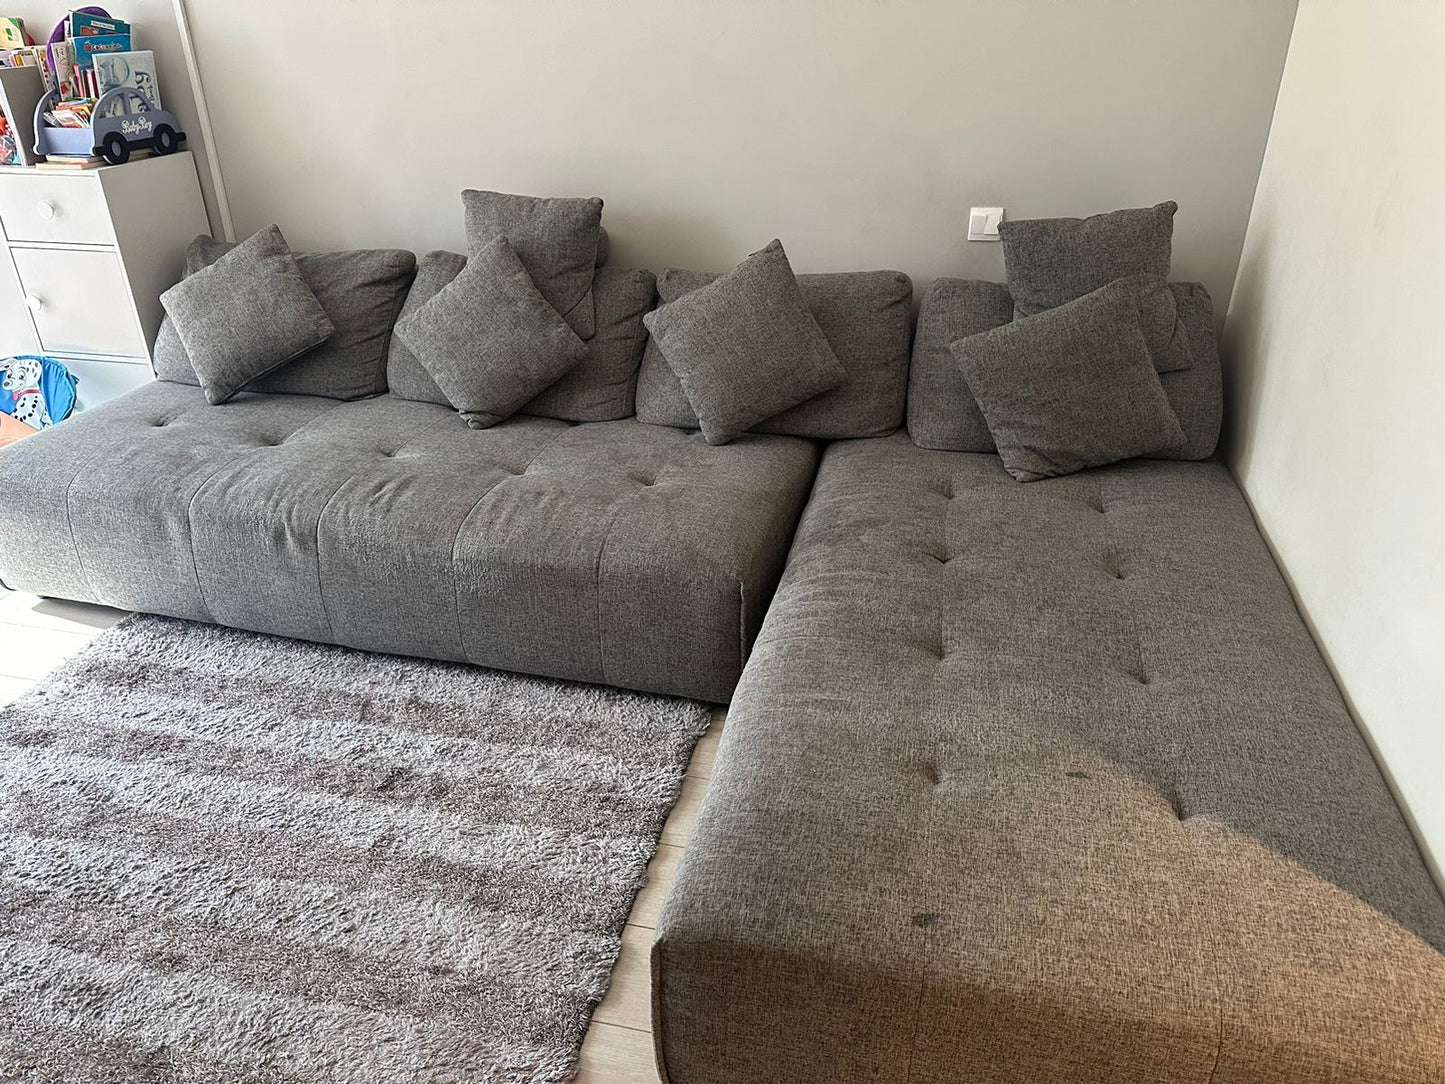 Home centre sofa bed